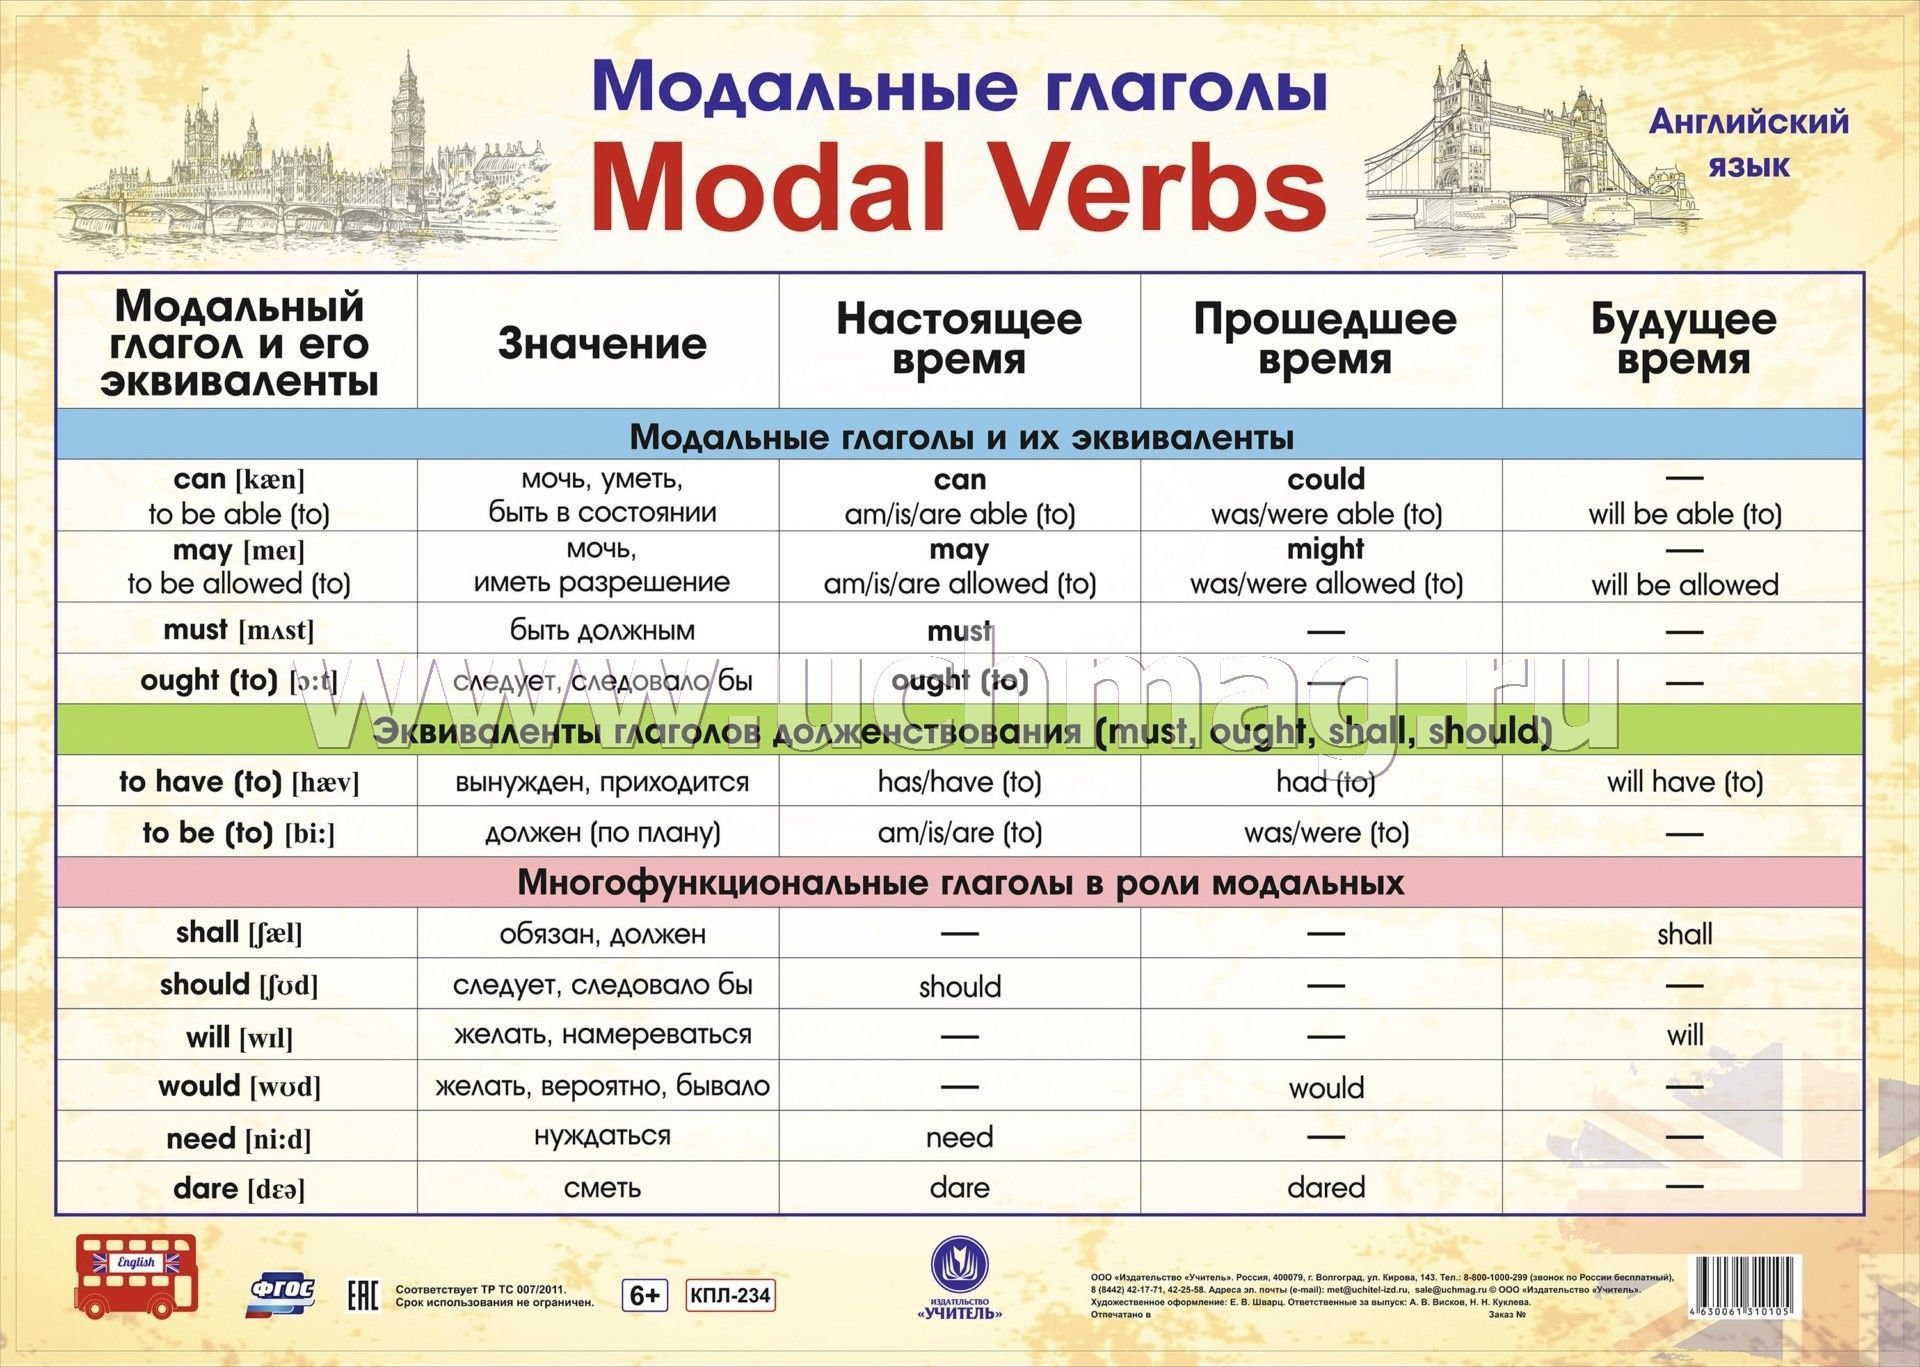 Camp глагол. Модальные глаголы в английском языке таблица. Модальные глаголы англ яз таблица. Модальные гляголы в анг. Можальные гдаголы втанглийсуом языке.